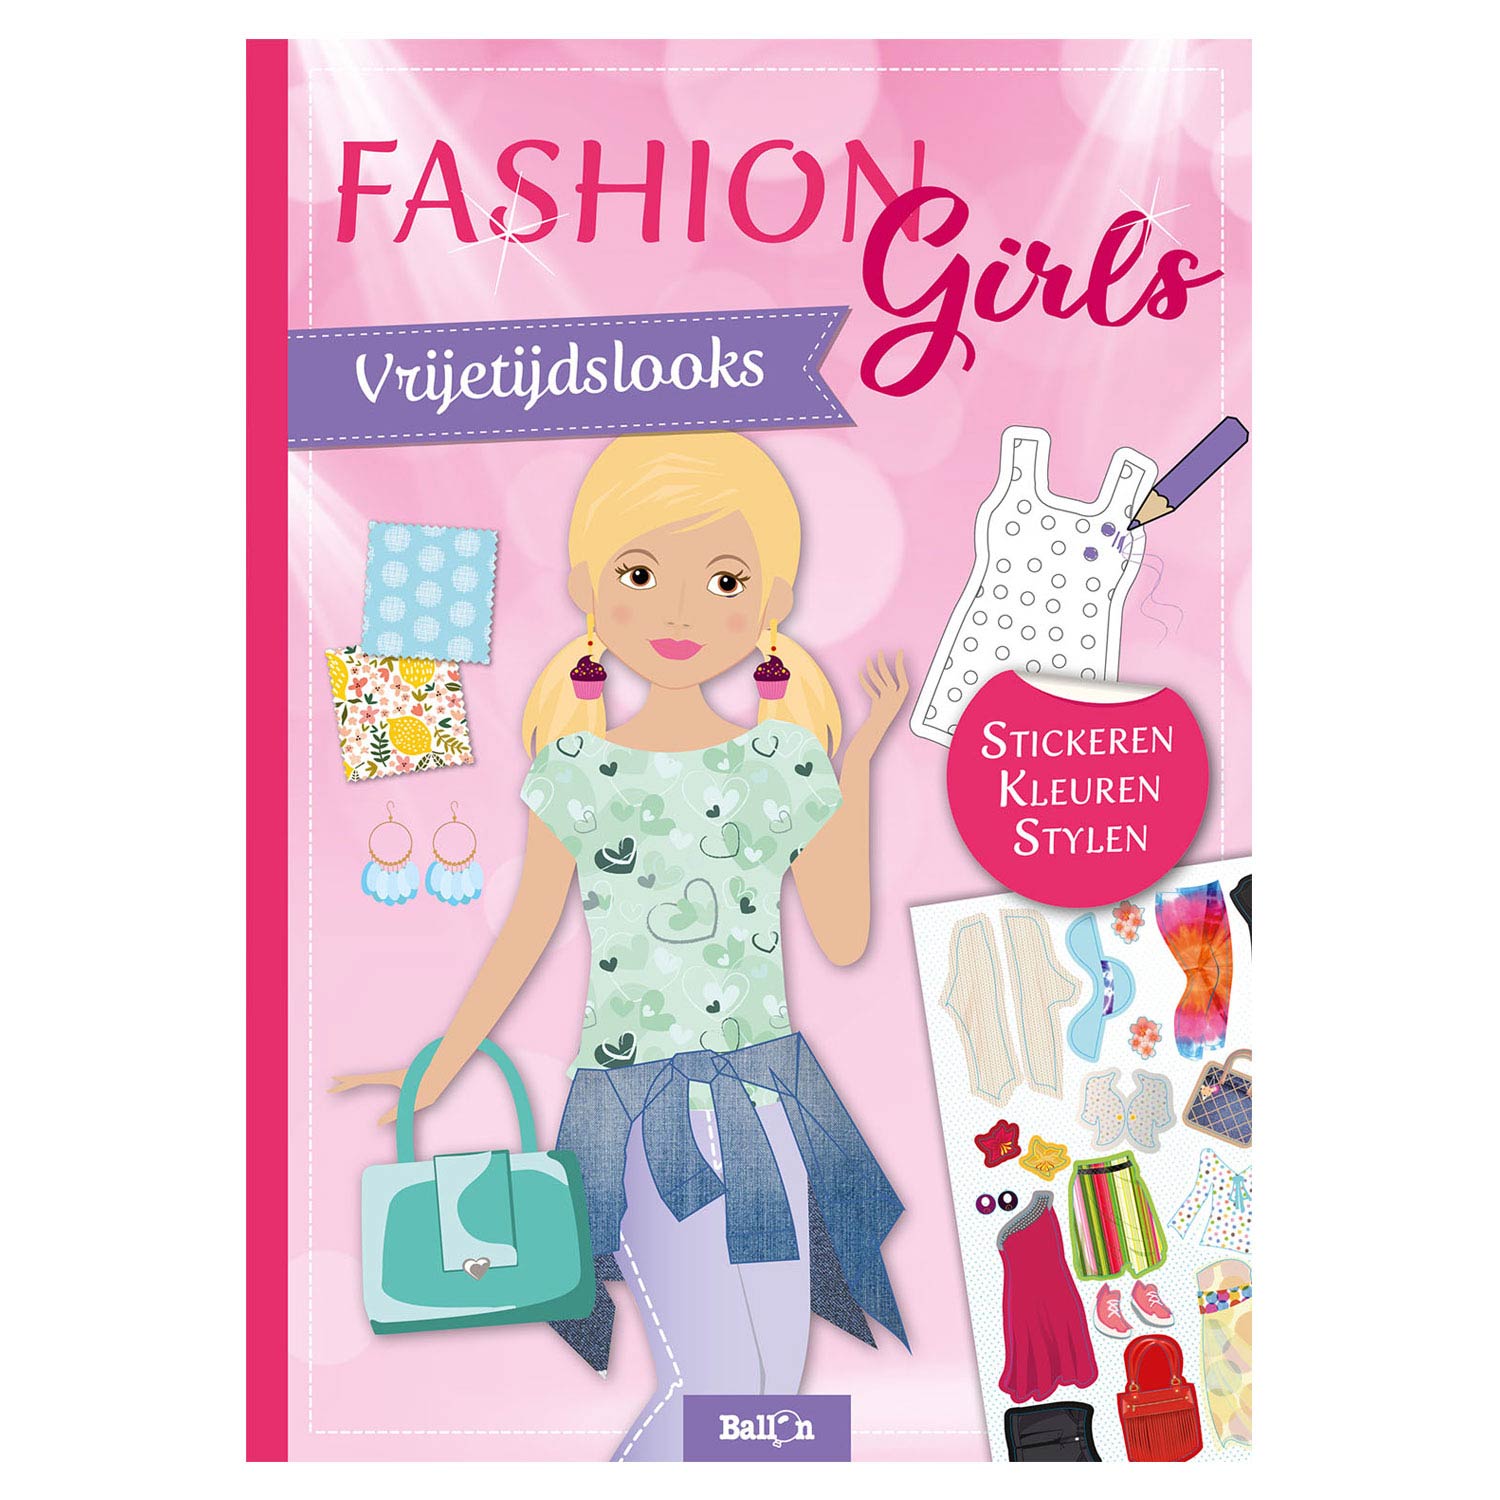 Fashion Girls - Vrijetijdslooks